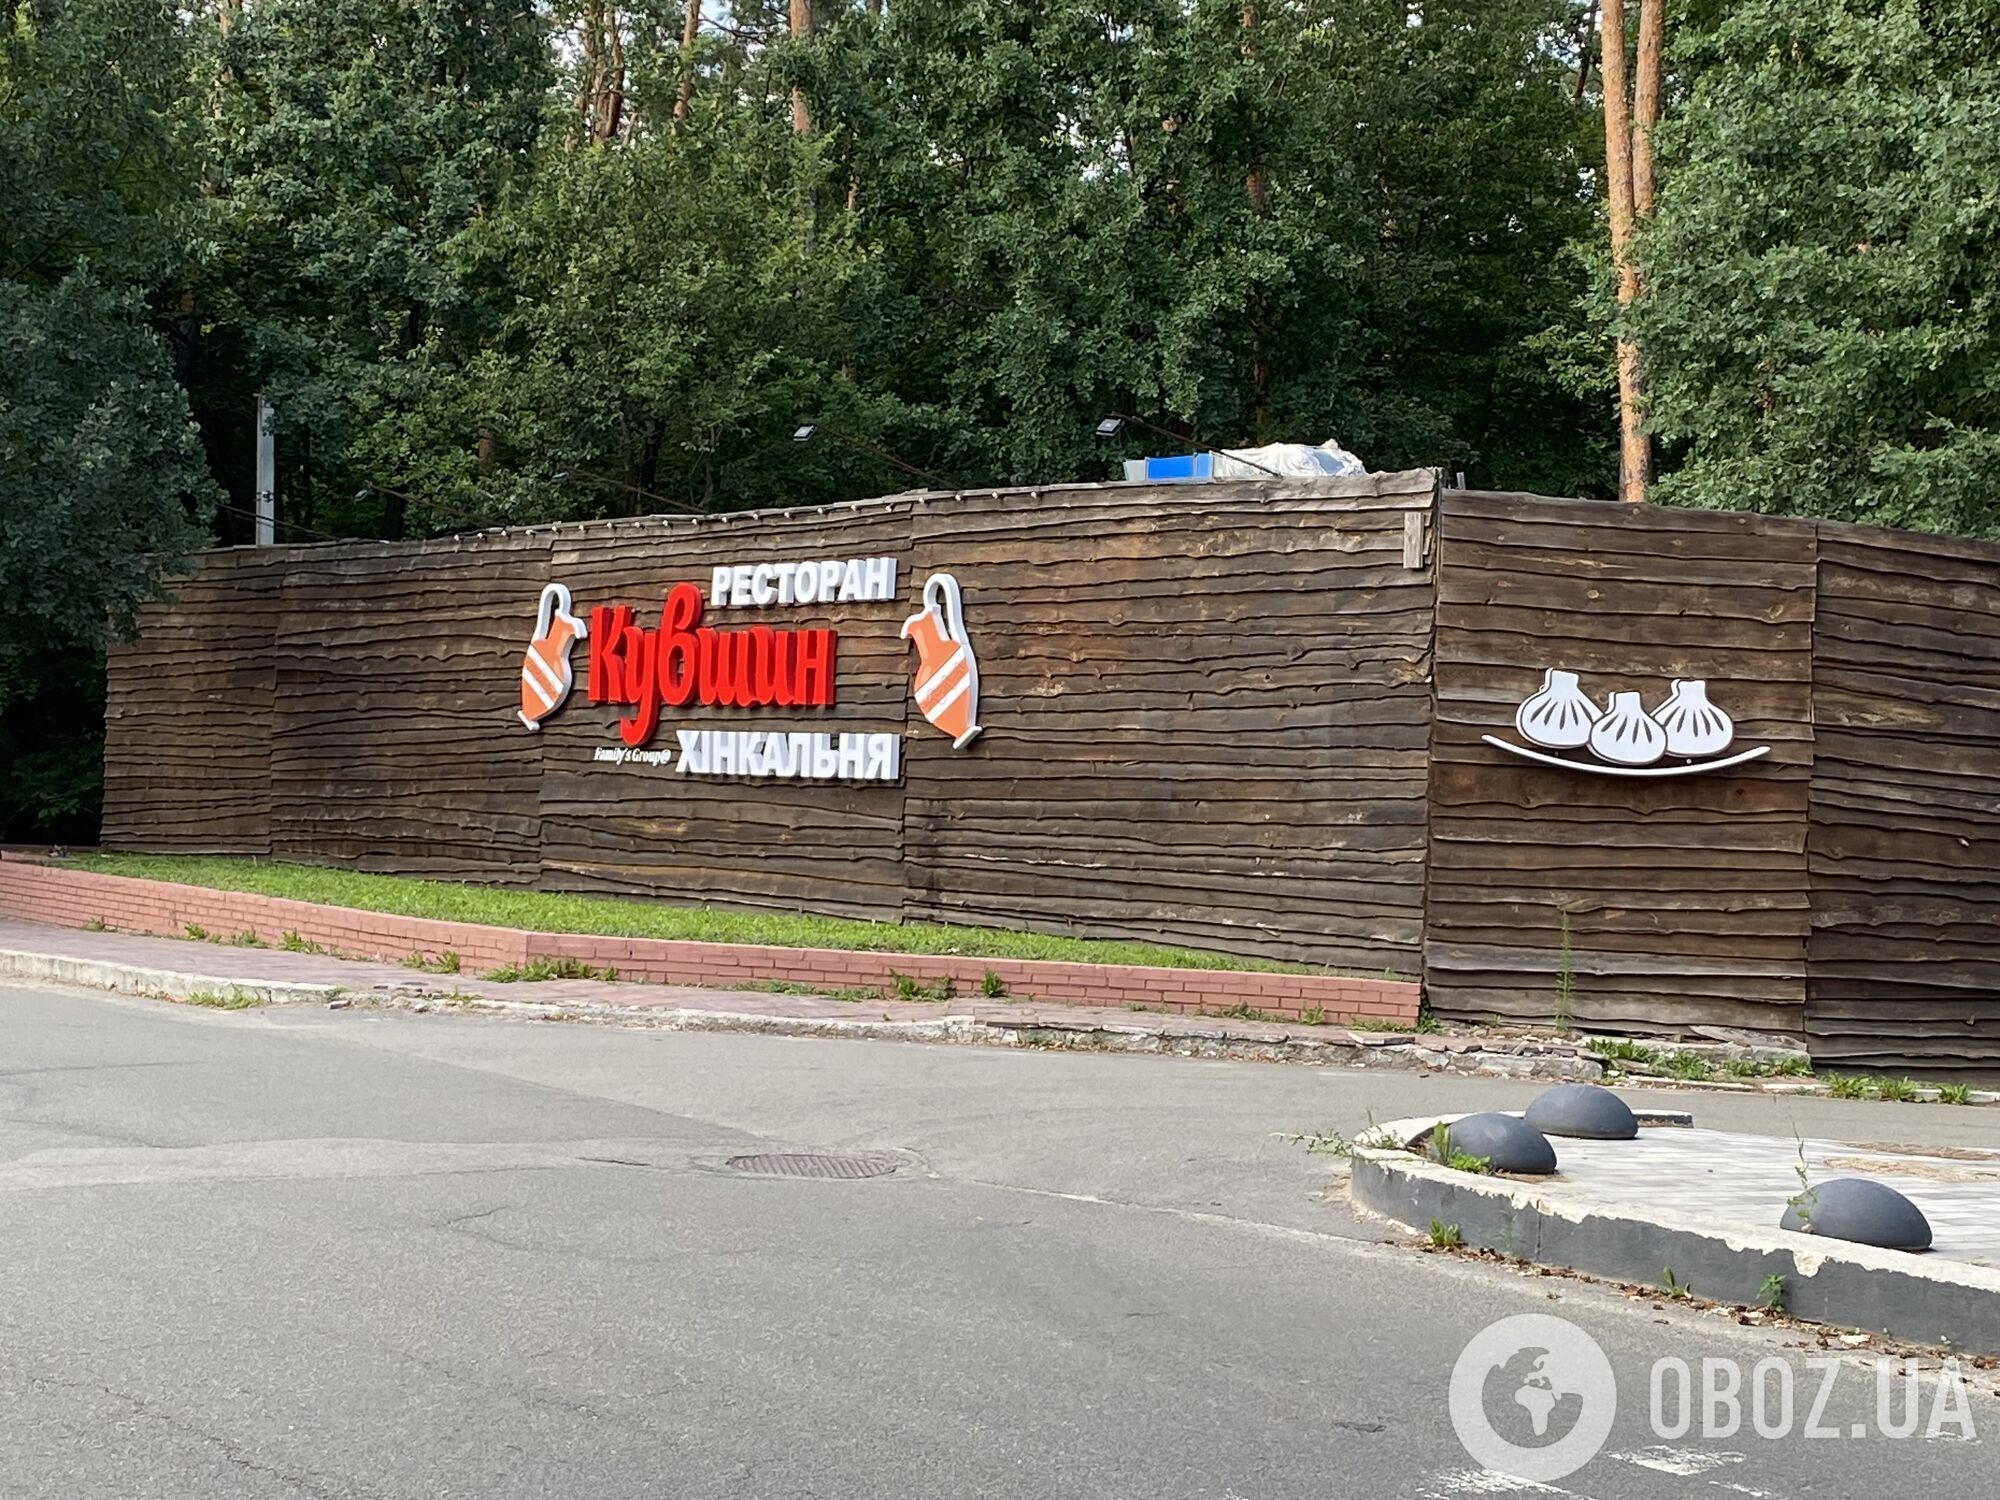 Киеву вернули часть Национального парка. Теперь осталось снести незаконный ресторан на заповедных землях НПП "Голосеевский" 